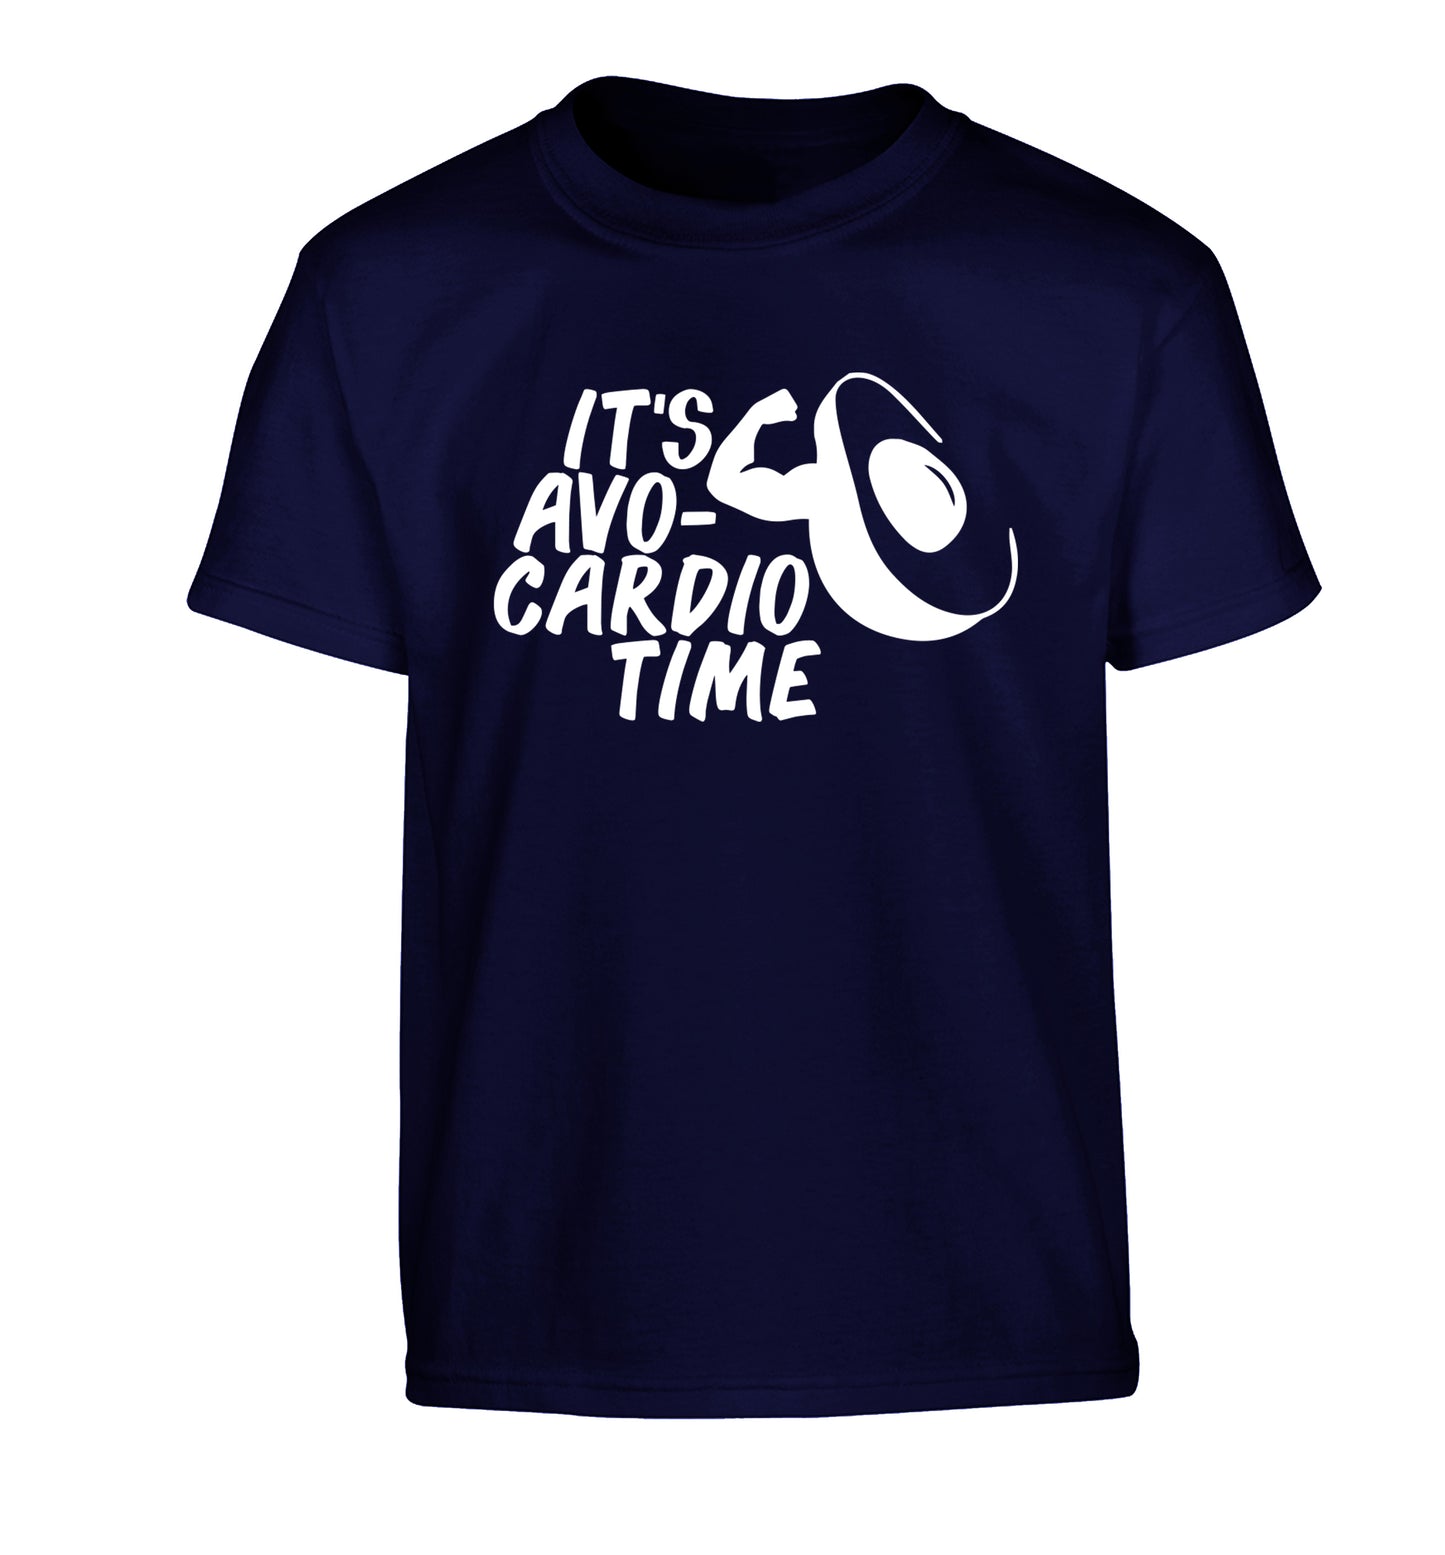 It's avo-cardio time Children's navy Tshirt 12-14 Years